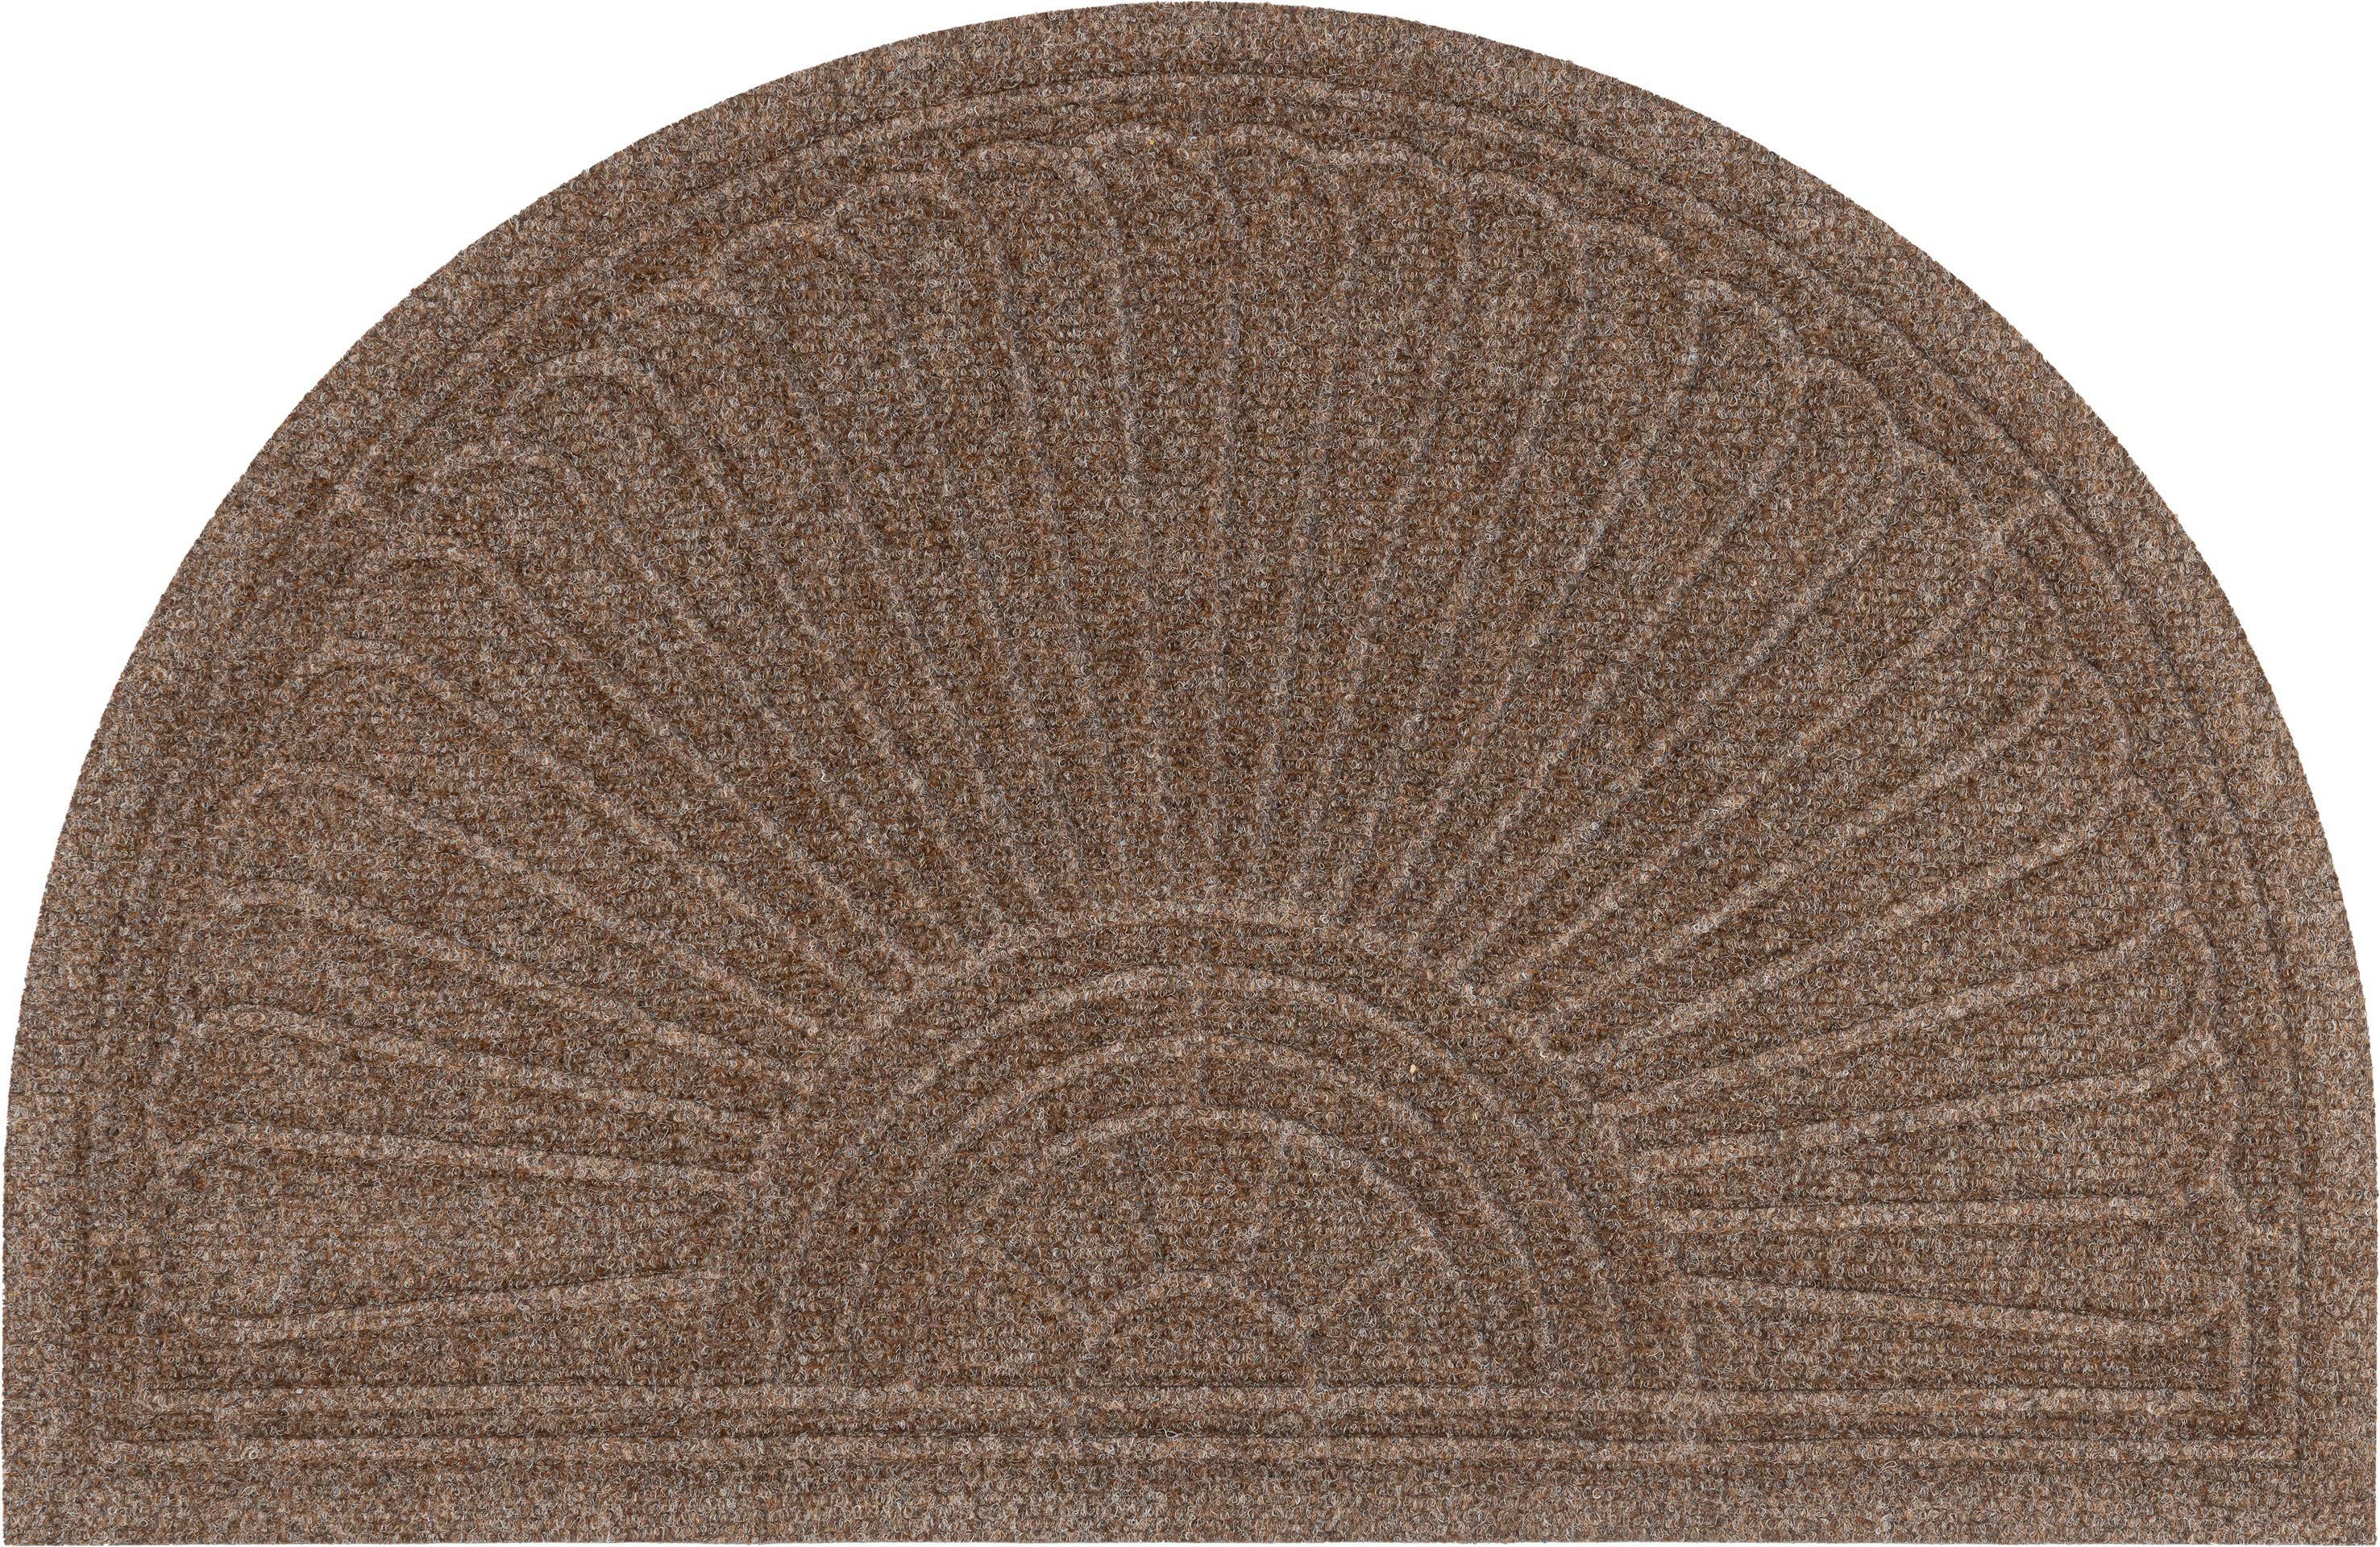 wash+dry by kleen-tex mat dune halfmoon taupe inloopmat, antislip, geschikt voor binnen en buiten, wasbaar bruin